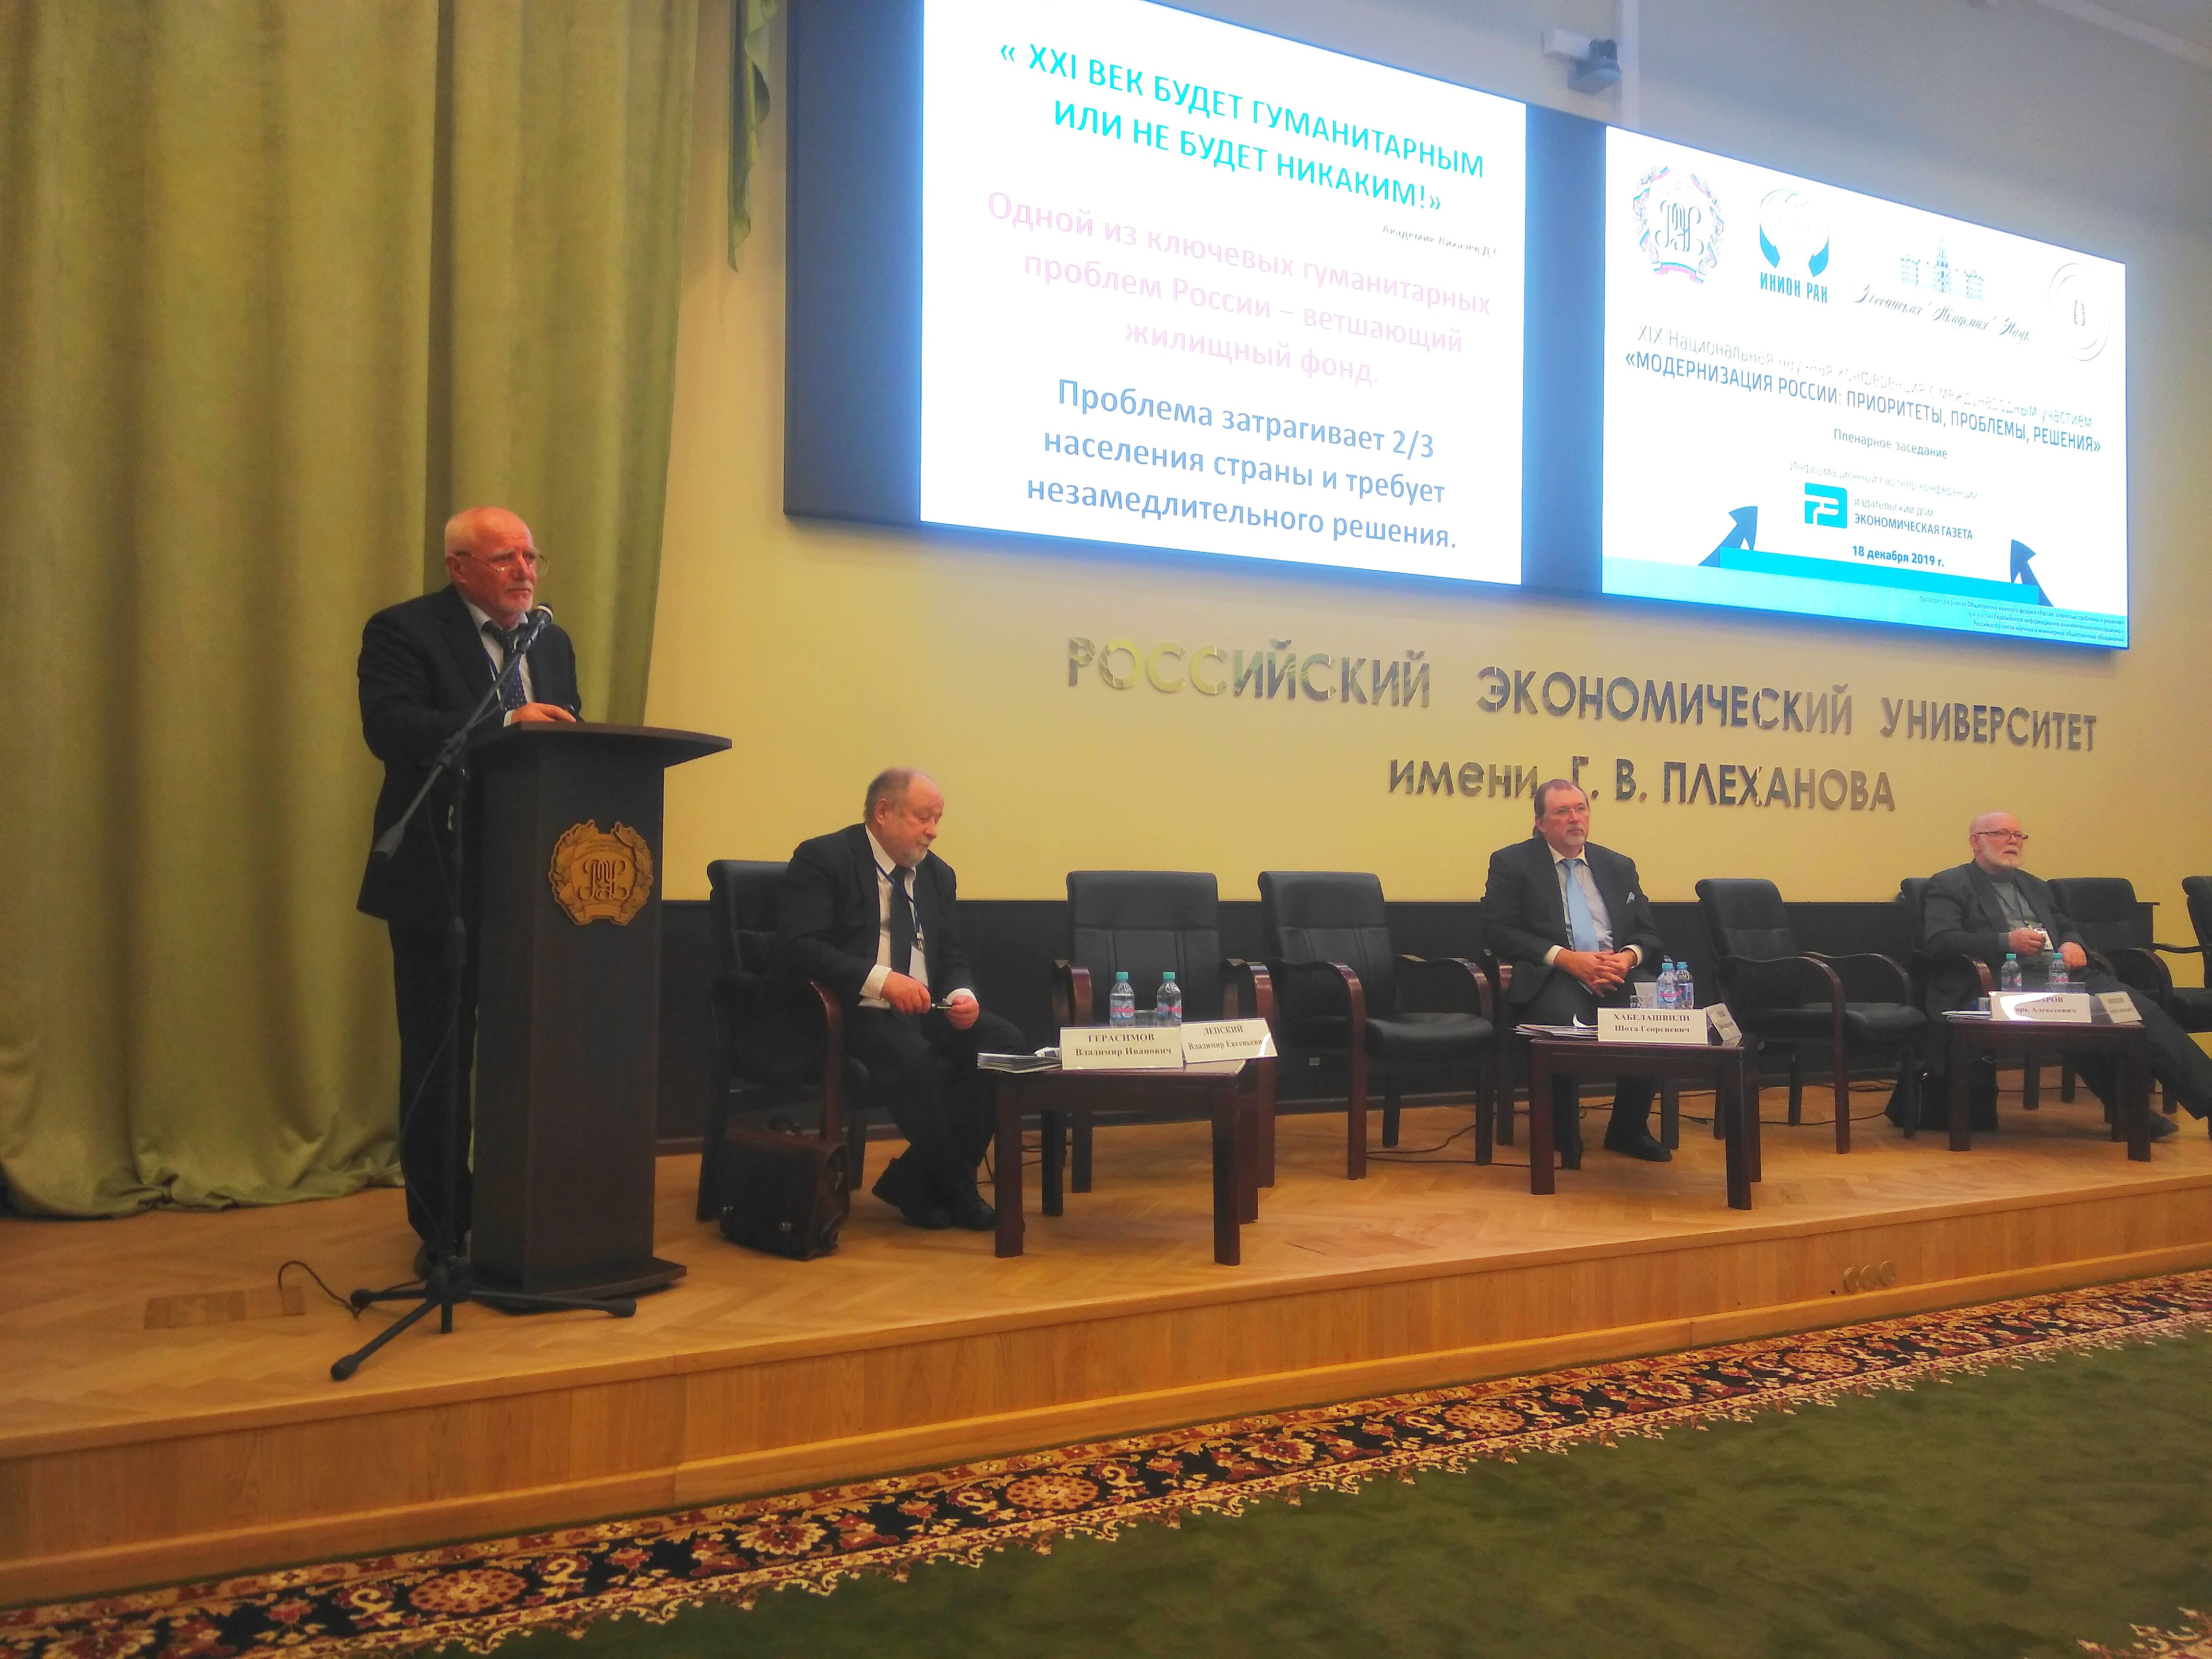 XIX Национальная научная конференция с международным участием  «Модернизация России: приоритеты, проблемы, решения».